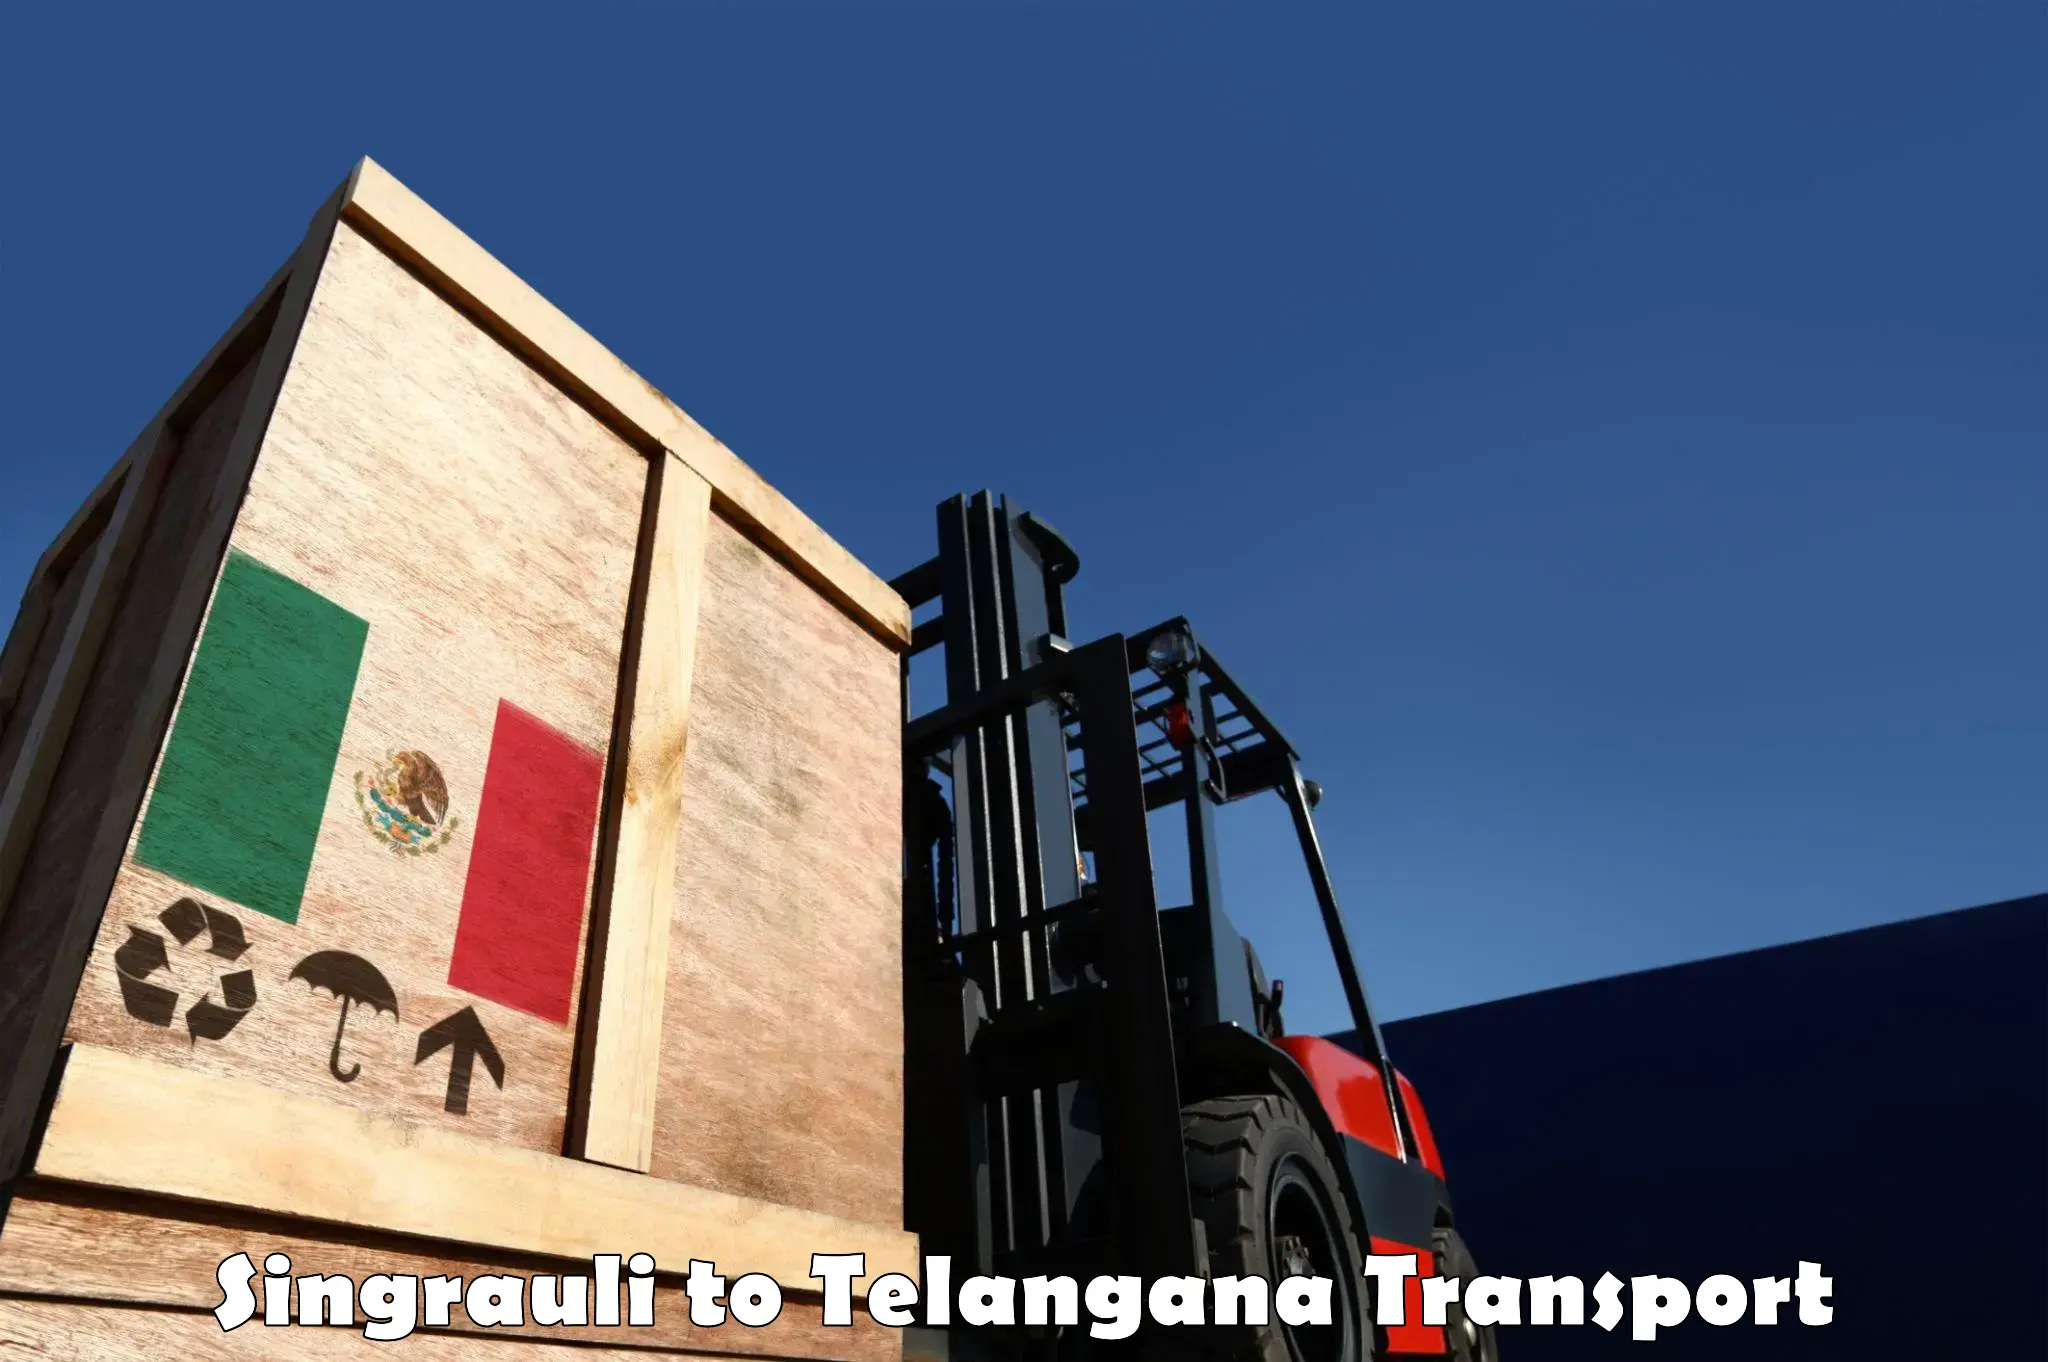 Furniture transport service Singrauli to Sangareddy